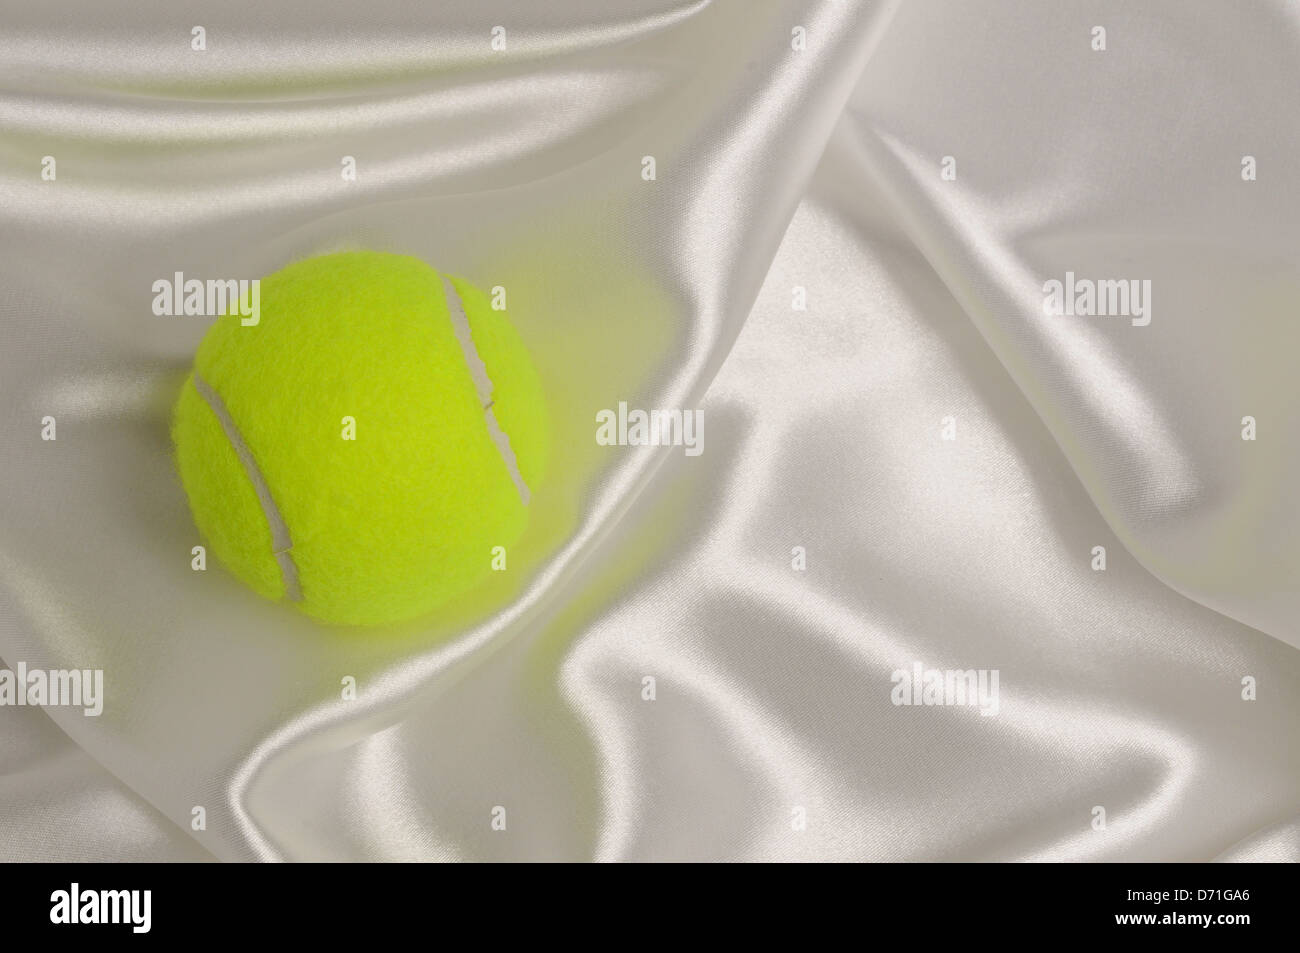 Tennis ball on white satin background. Stock Photo